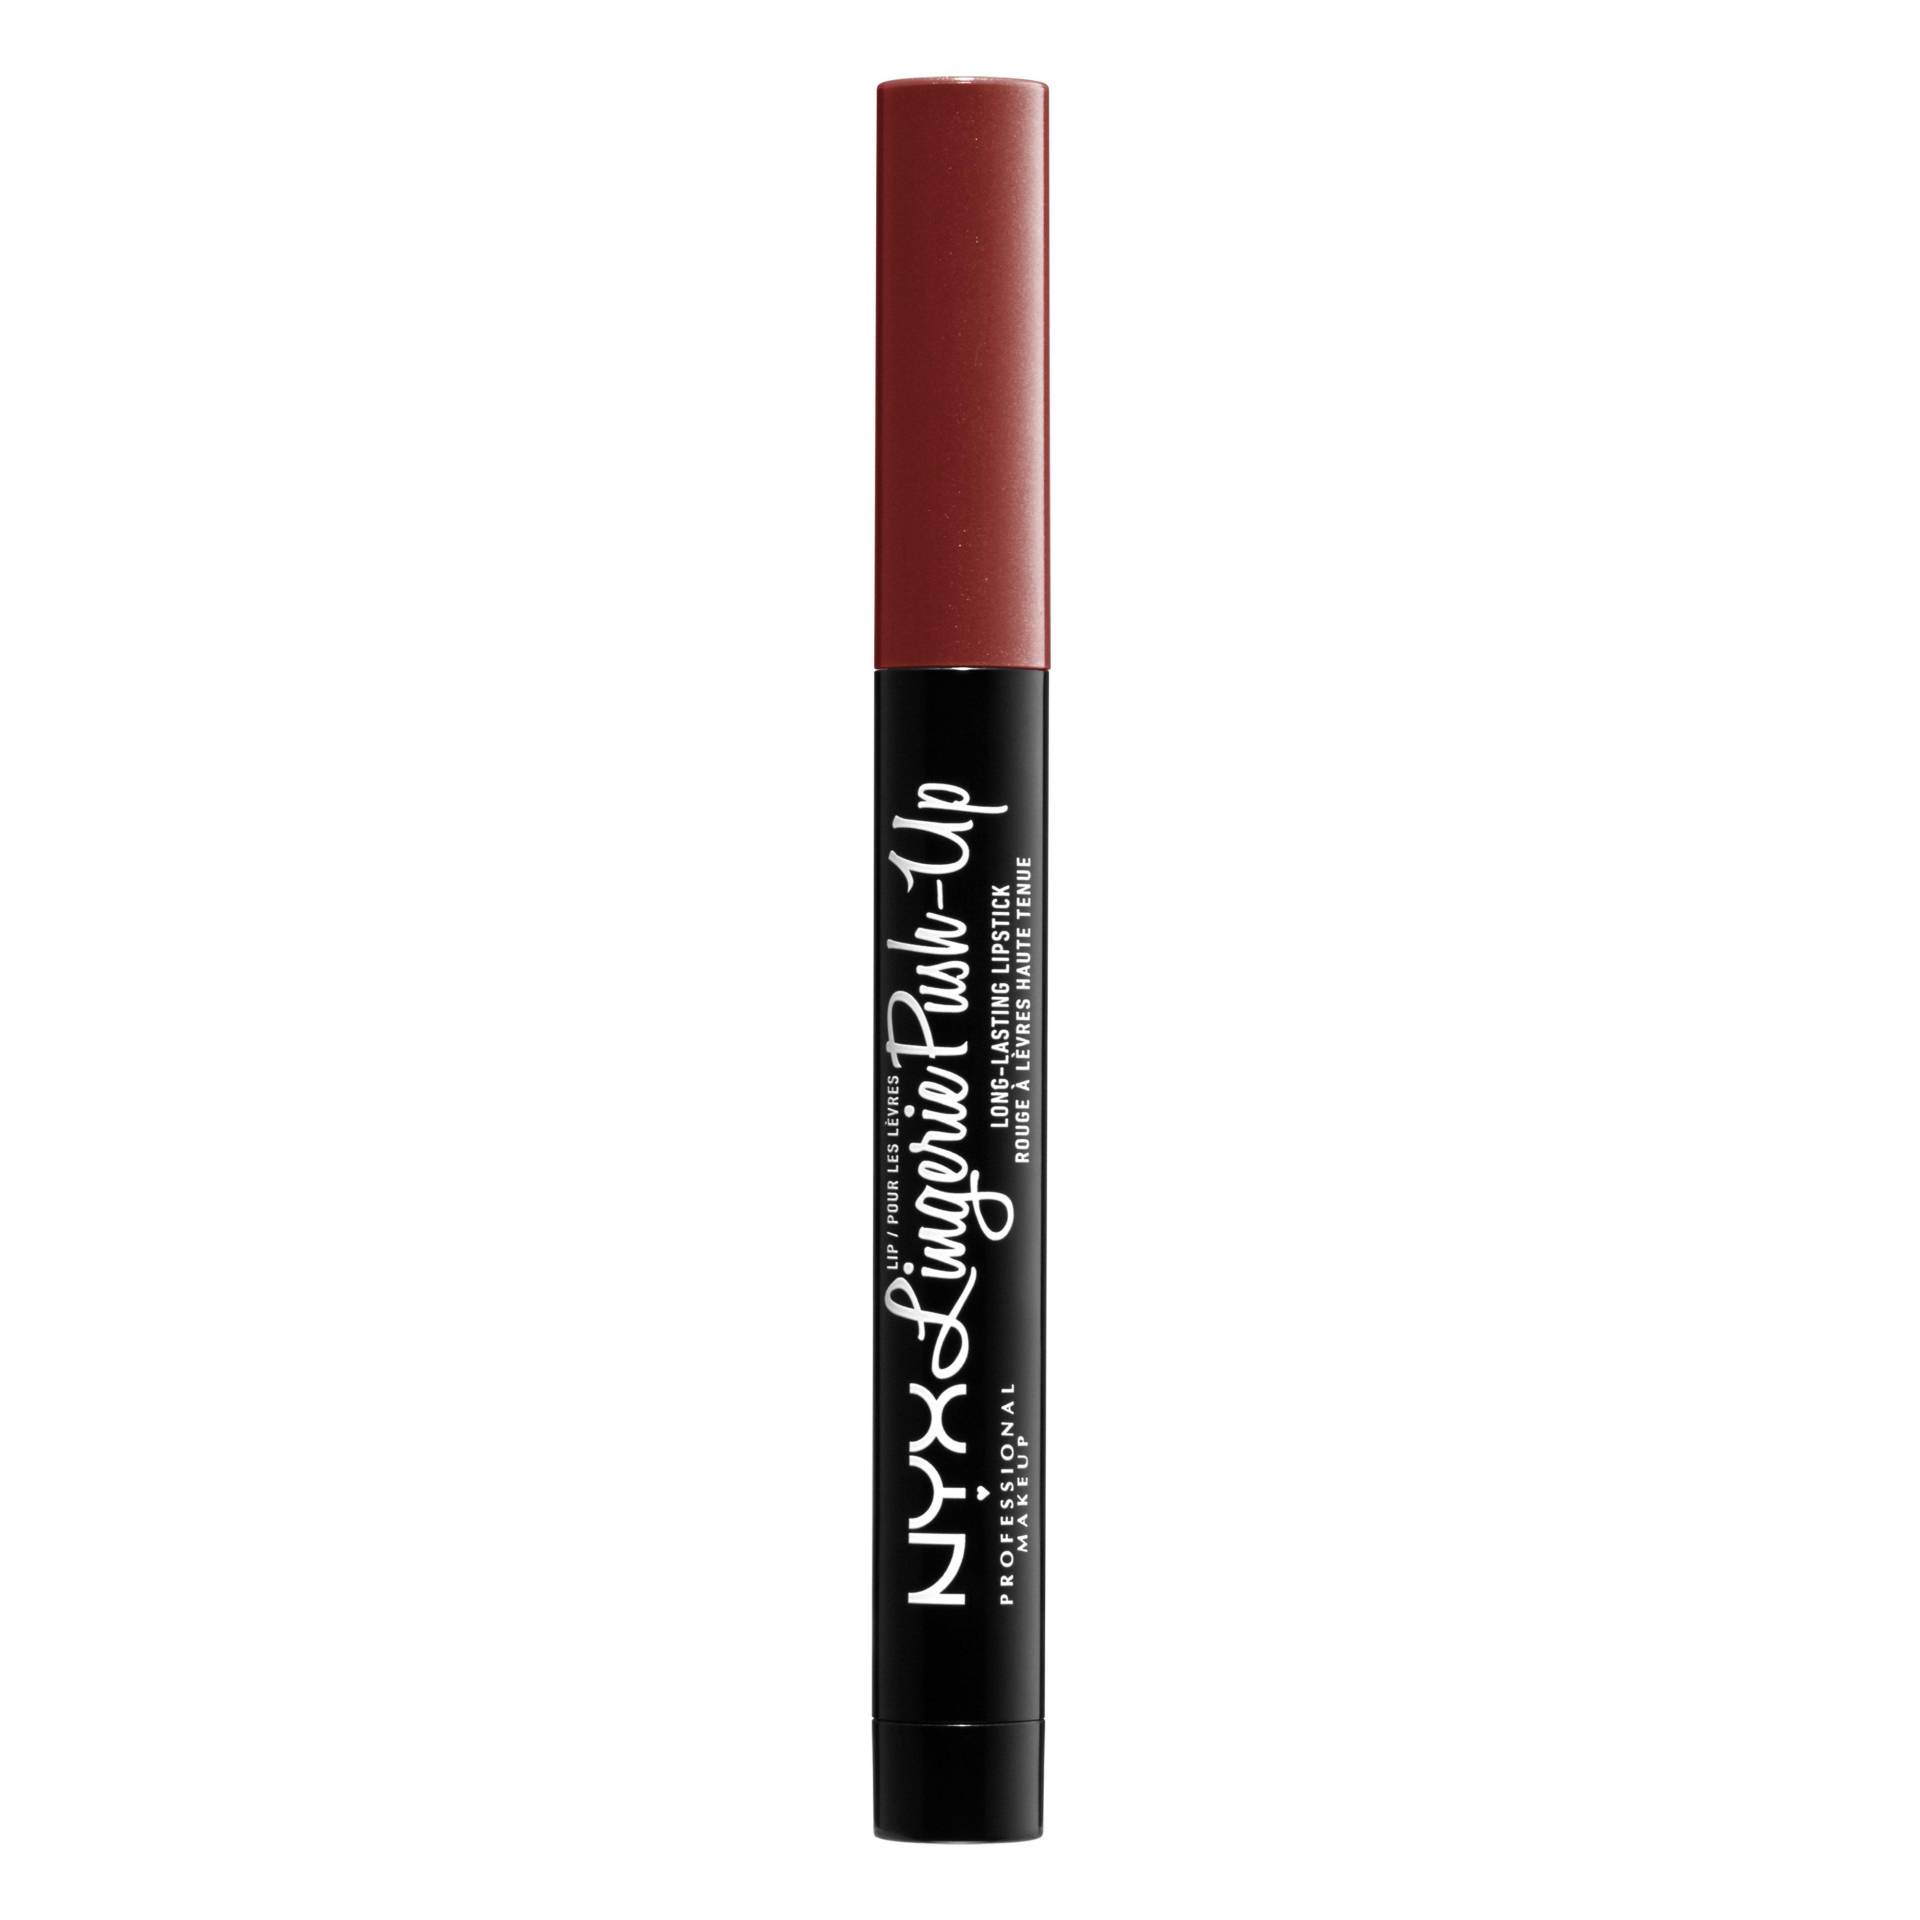 Lip Lingerie Push Up Long-lasting Lipstick Damen Seduction 14g von NYX-PROFESSIONAL-MAKEUP